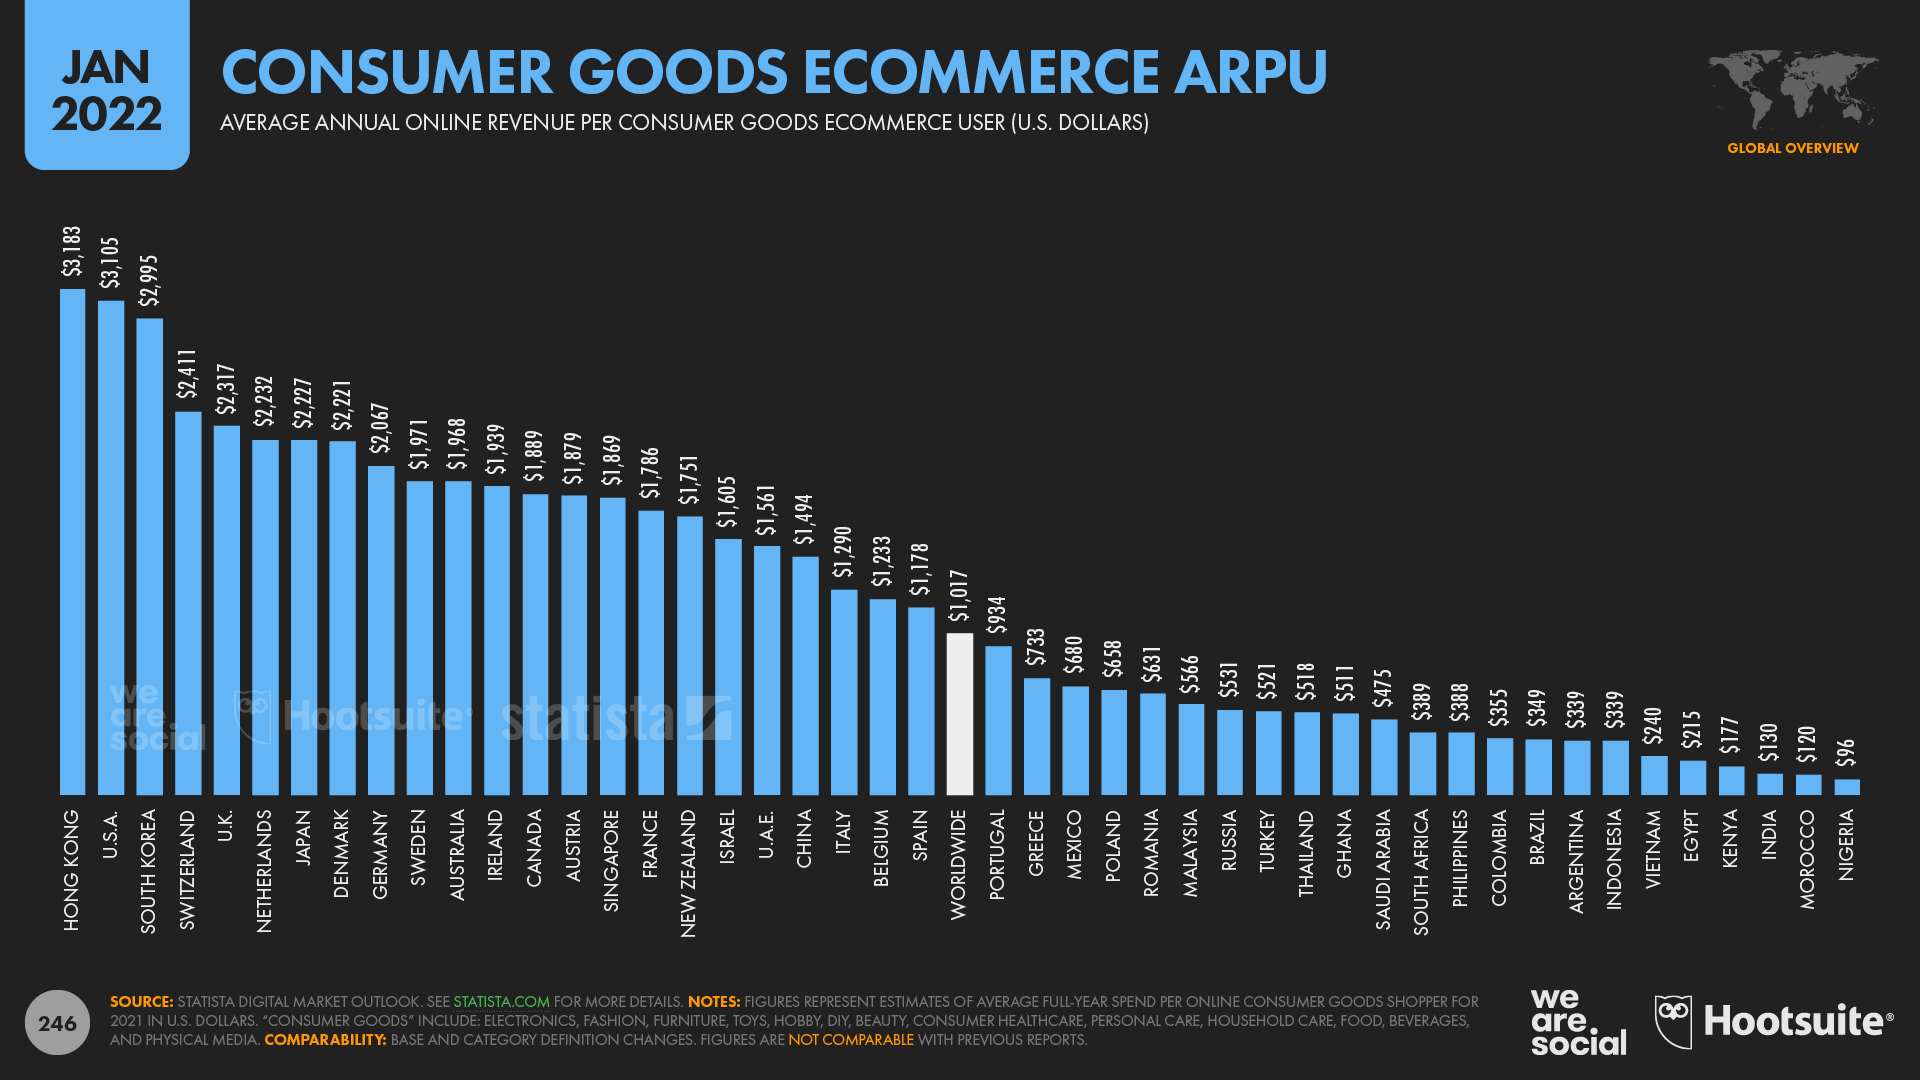 chart showing consumer goods ecommerce ARPU